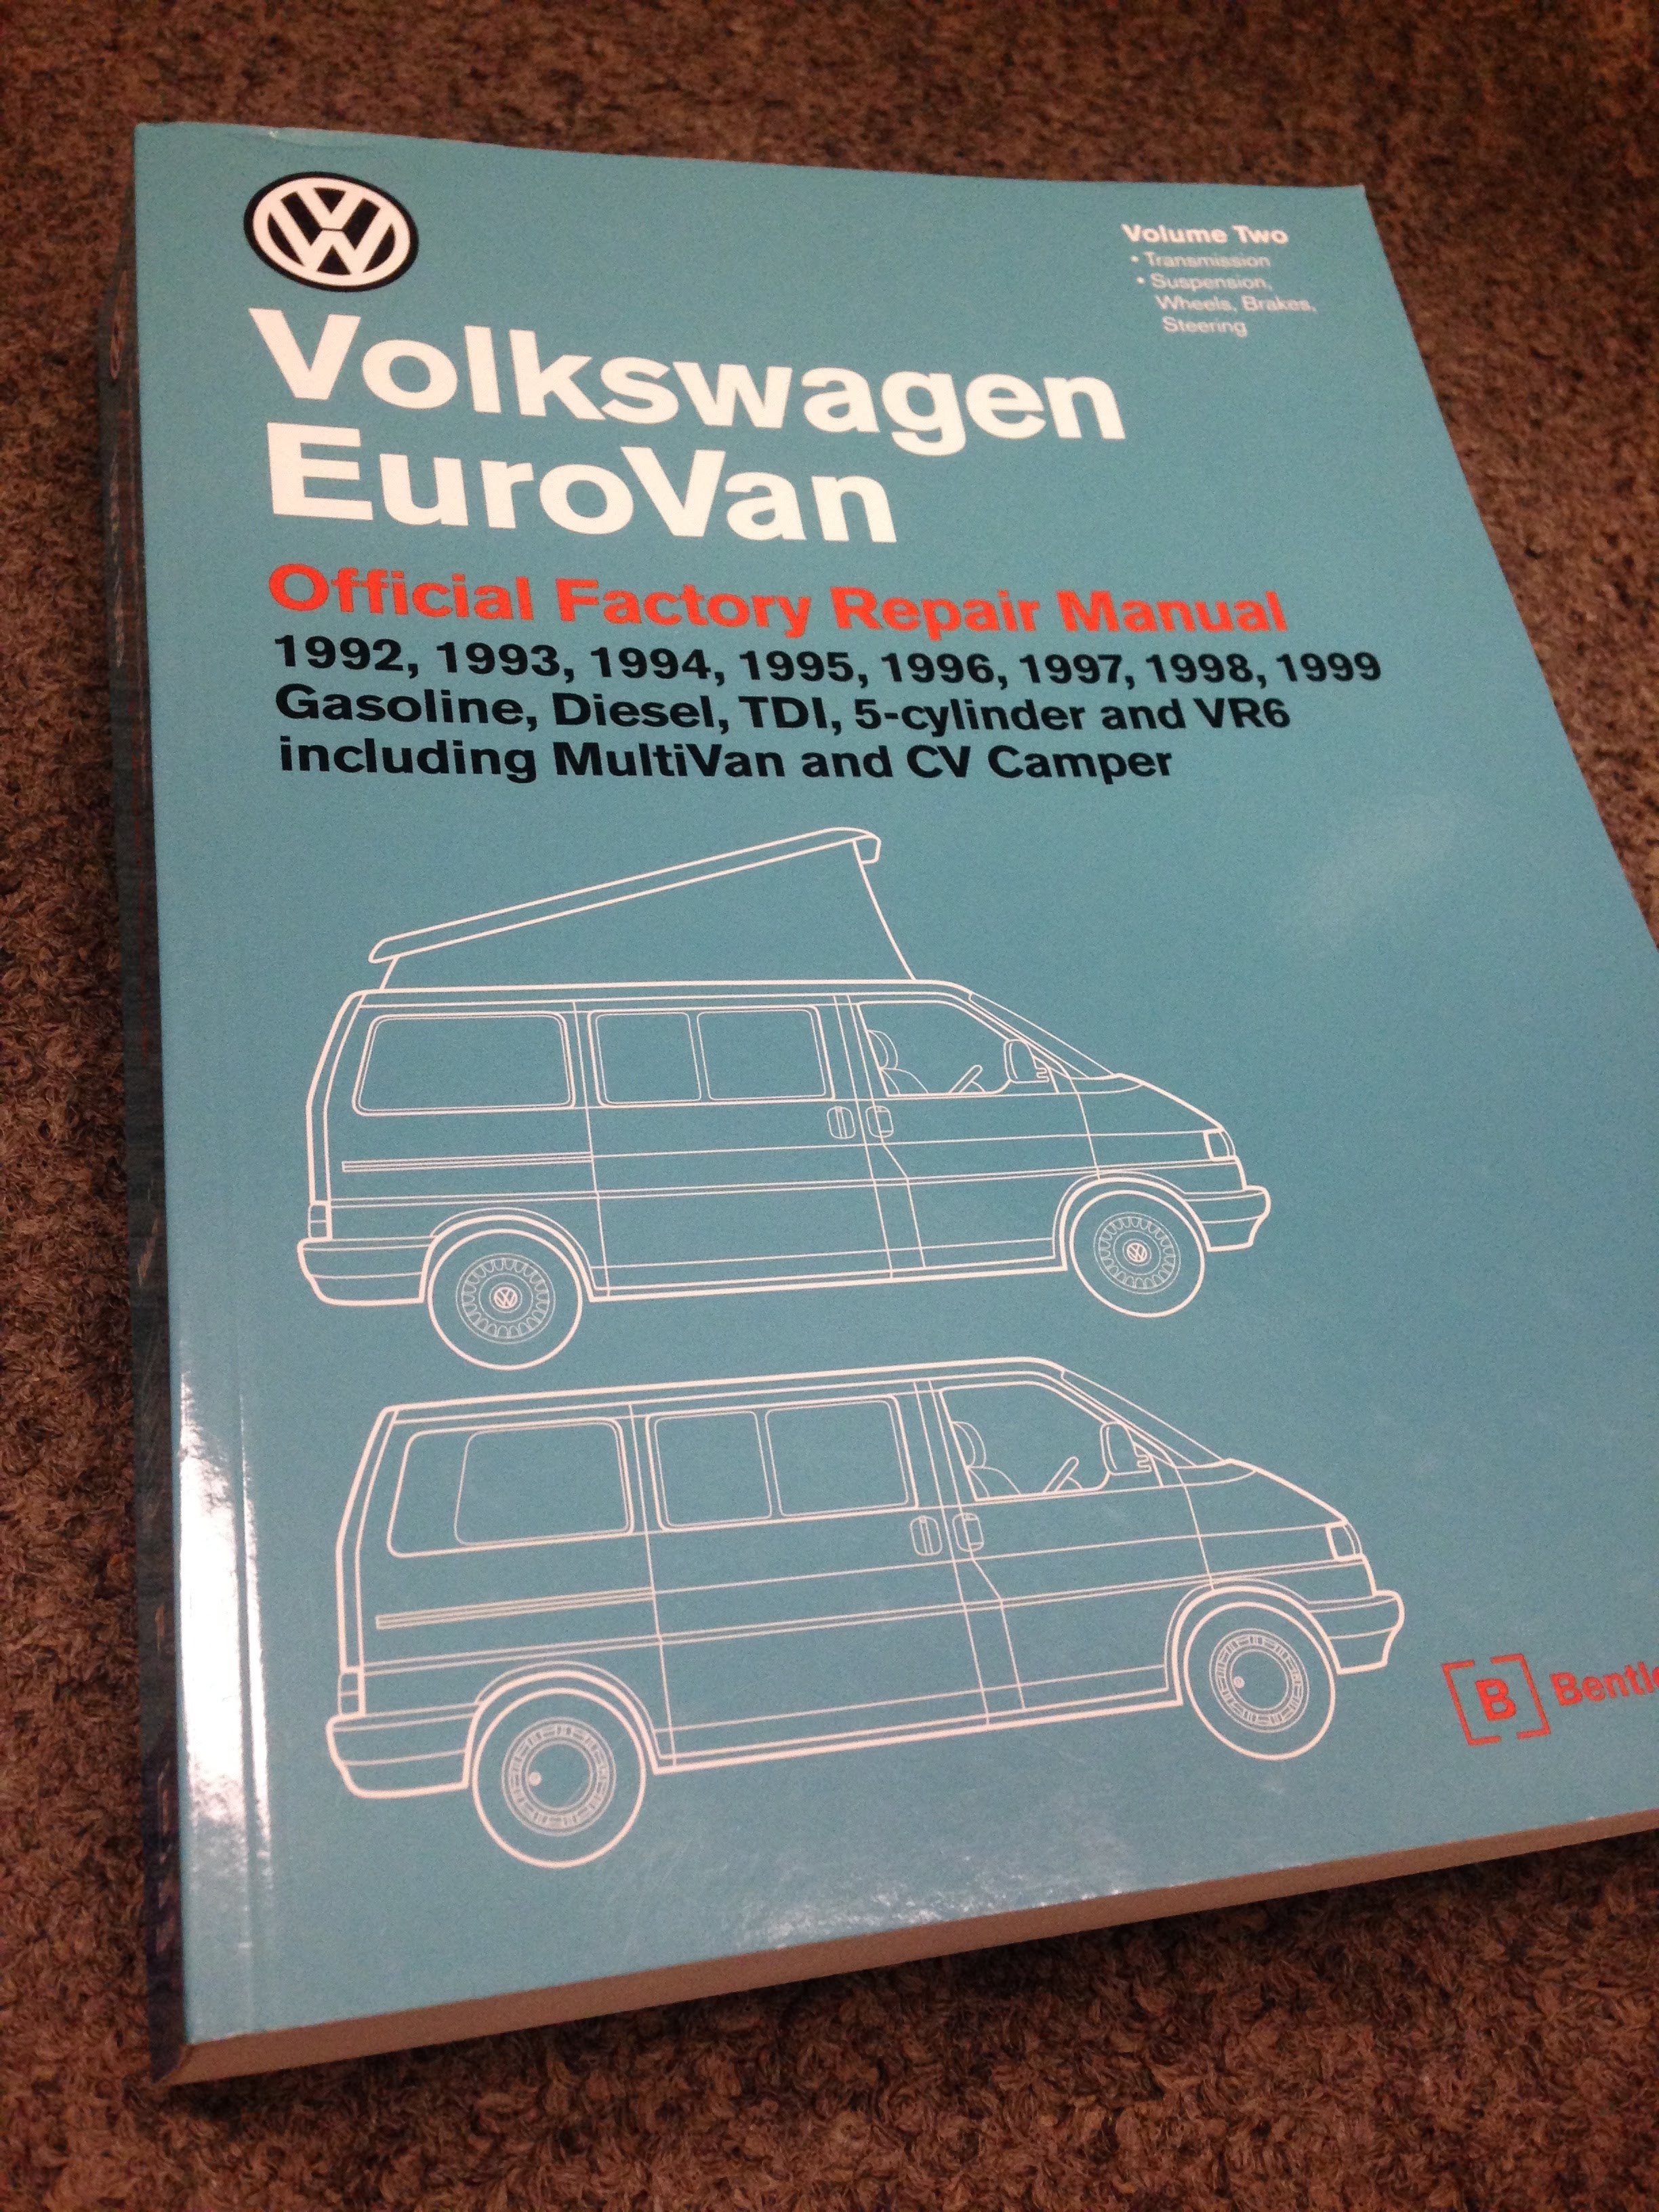 Volkswagen EuroVan manuals